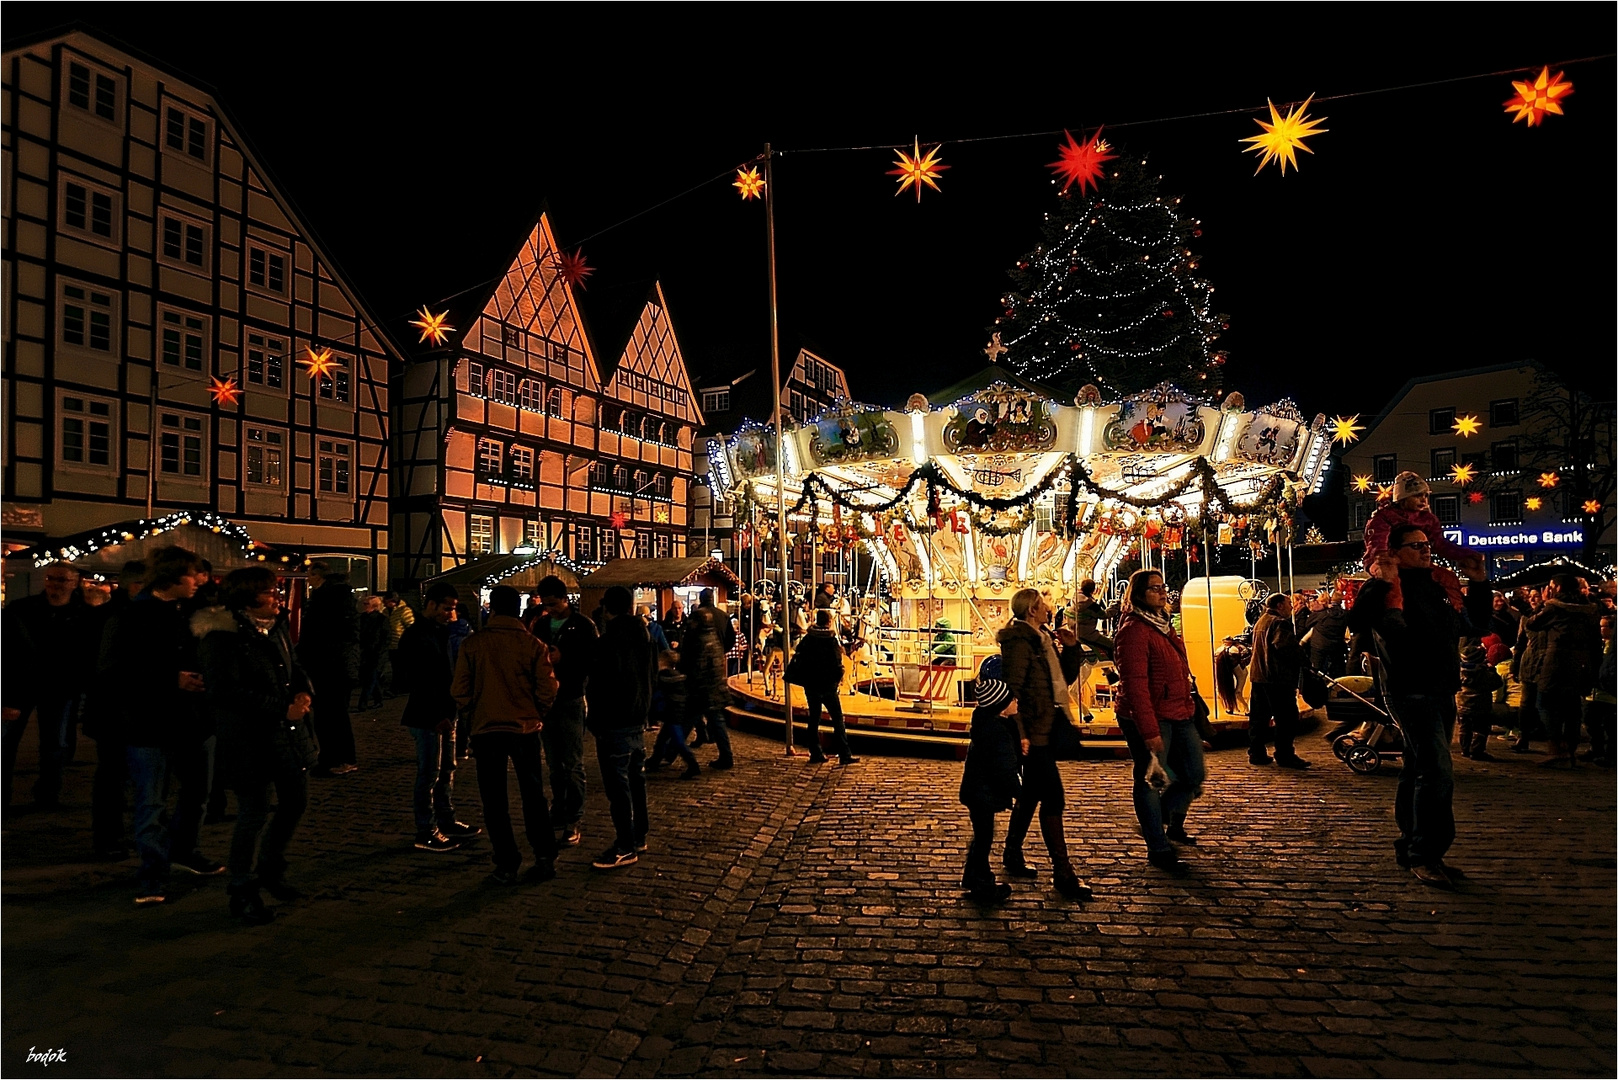 Weihnachstmarkt Soest-einer der schönsten Weihnachtsmärkte in NRW